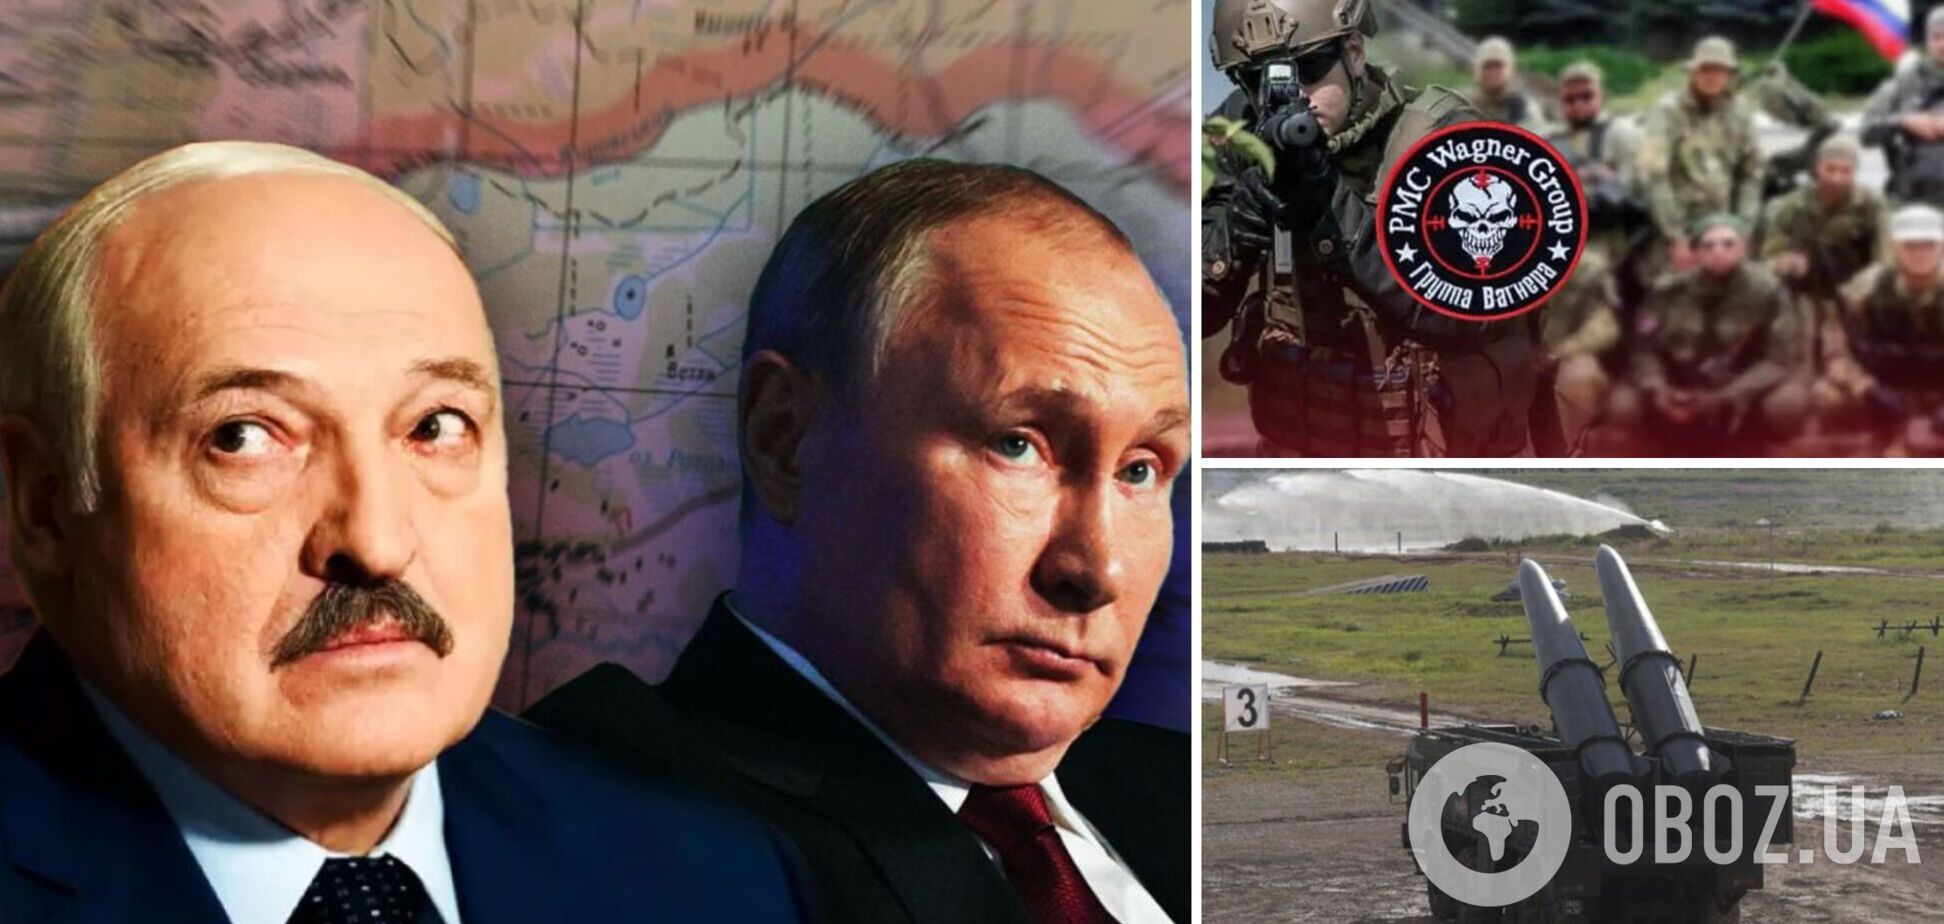  Ядерна зброя та ПВК 'Вагнер' у Білорусі: черговий блеф Кремля для тиску на Європу